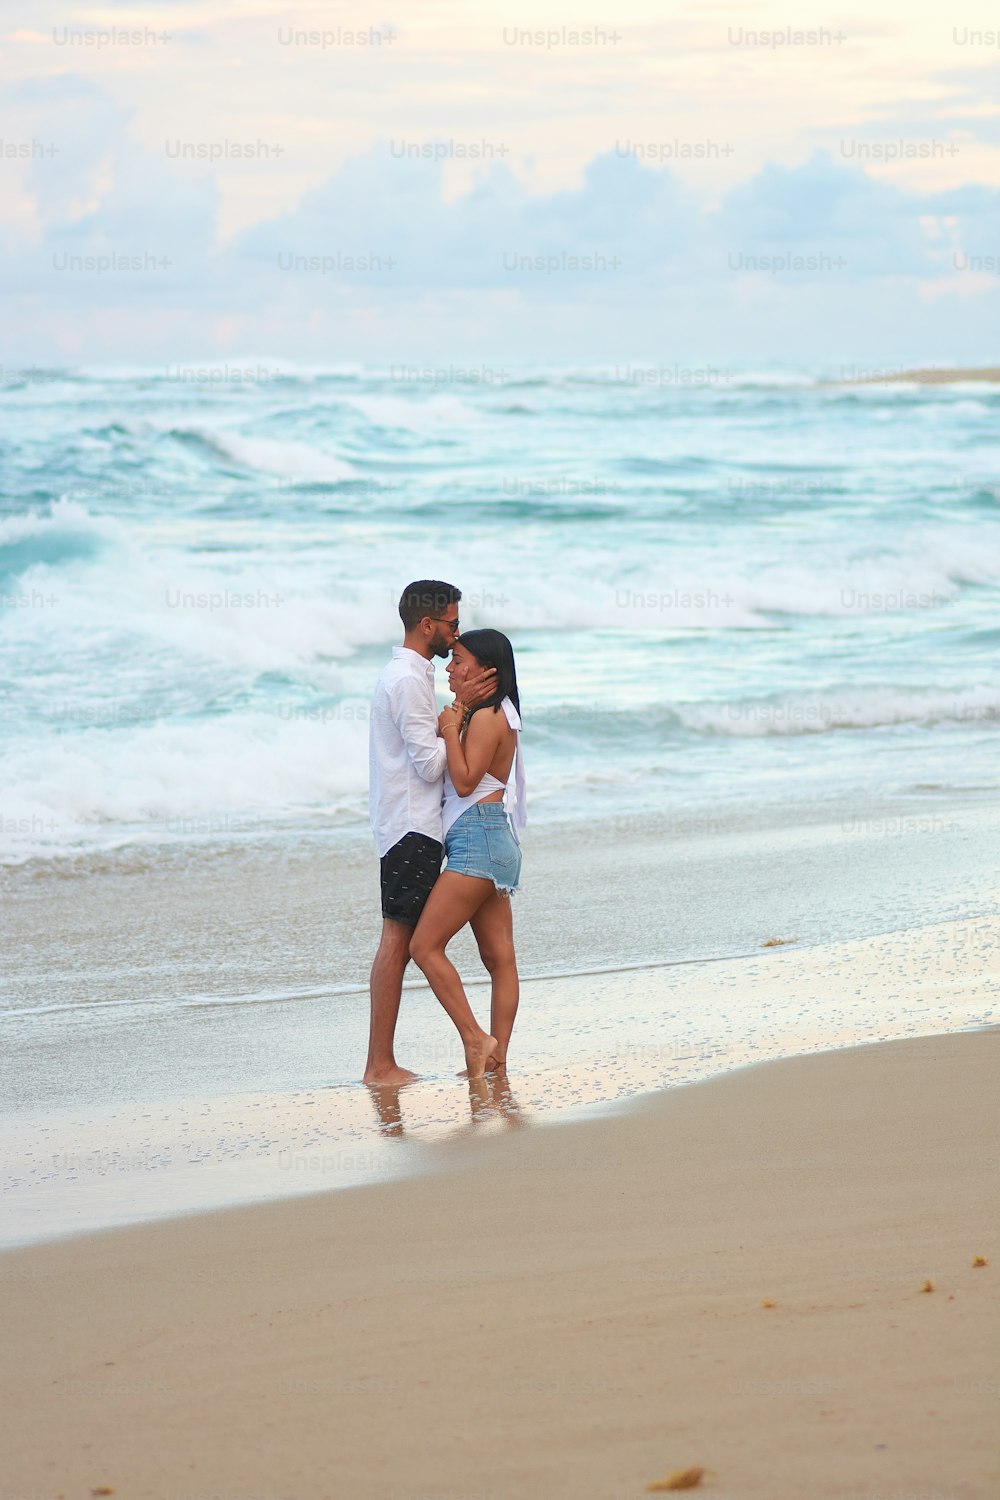 Un hombre y una mujer parados en una playa junto al océano